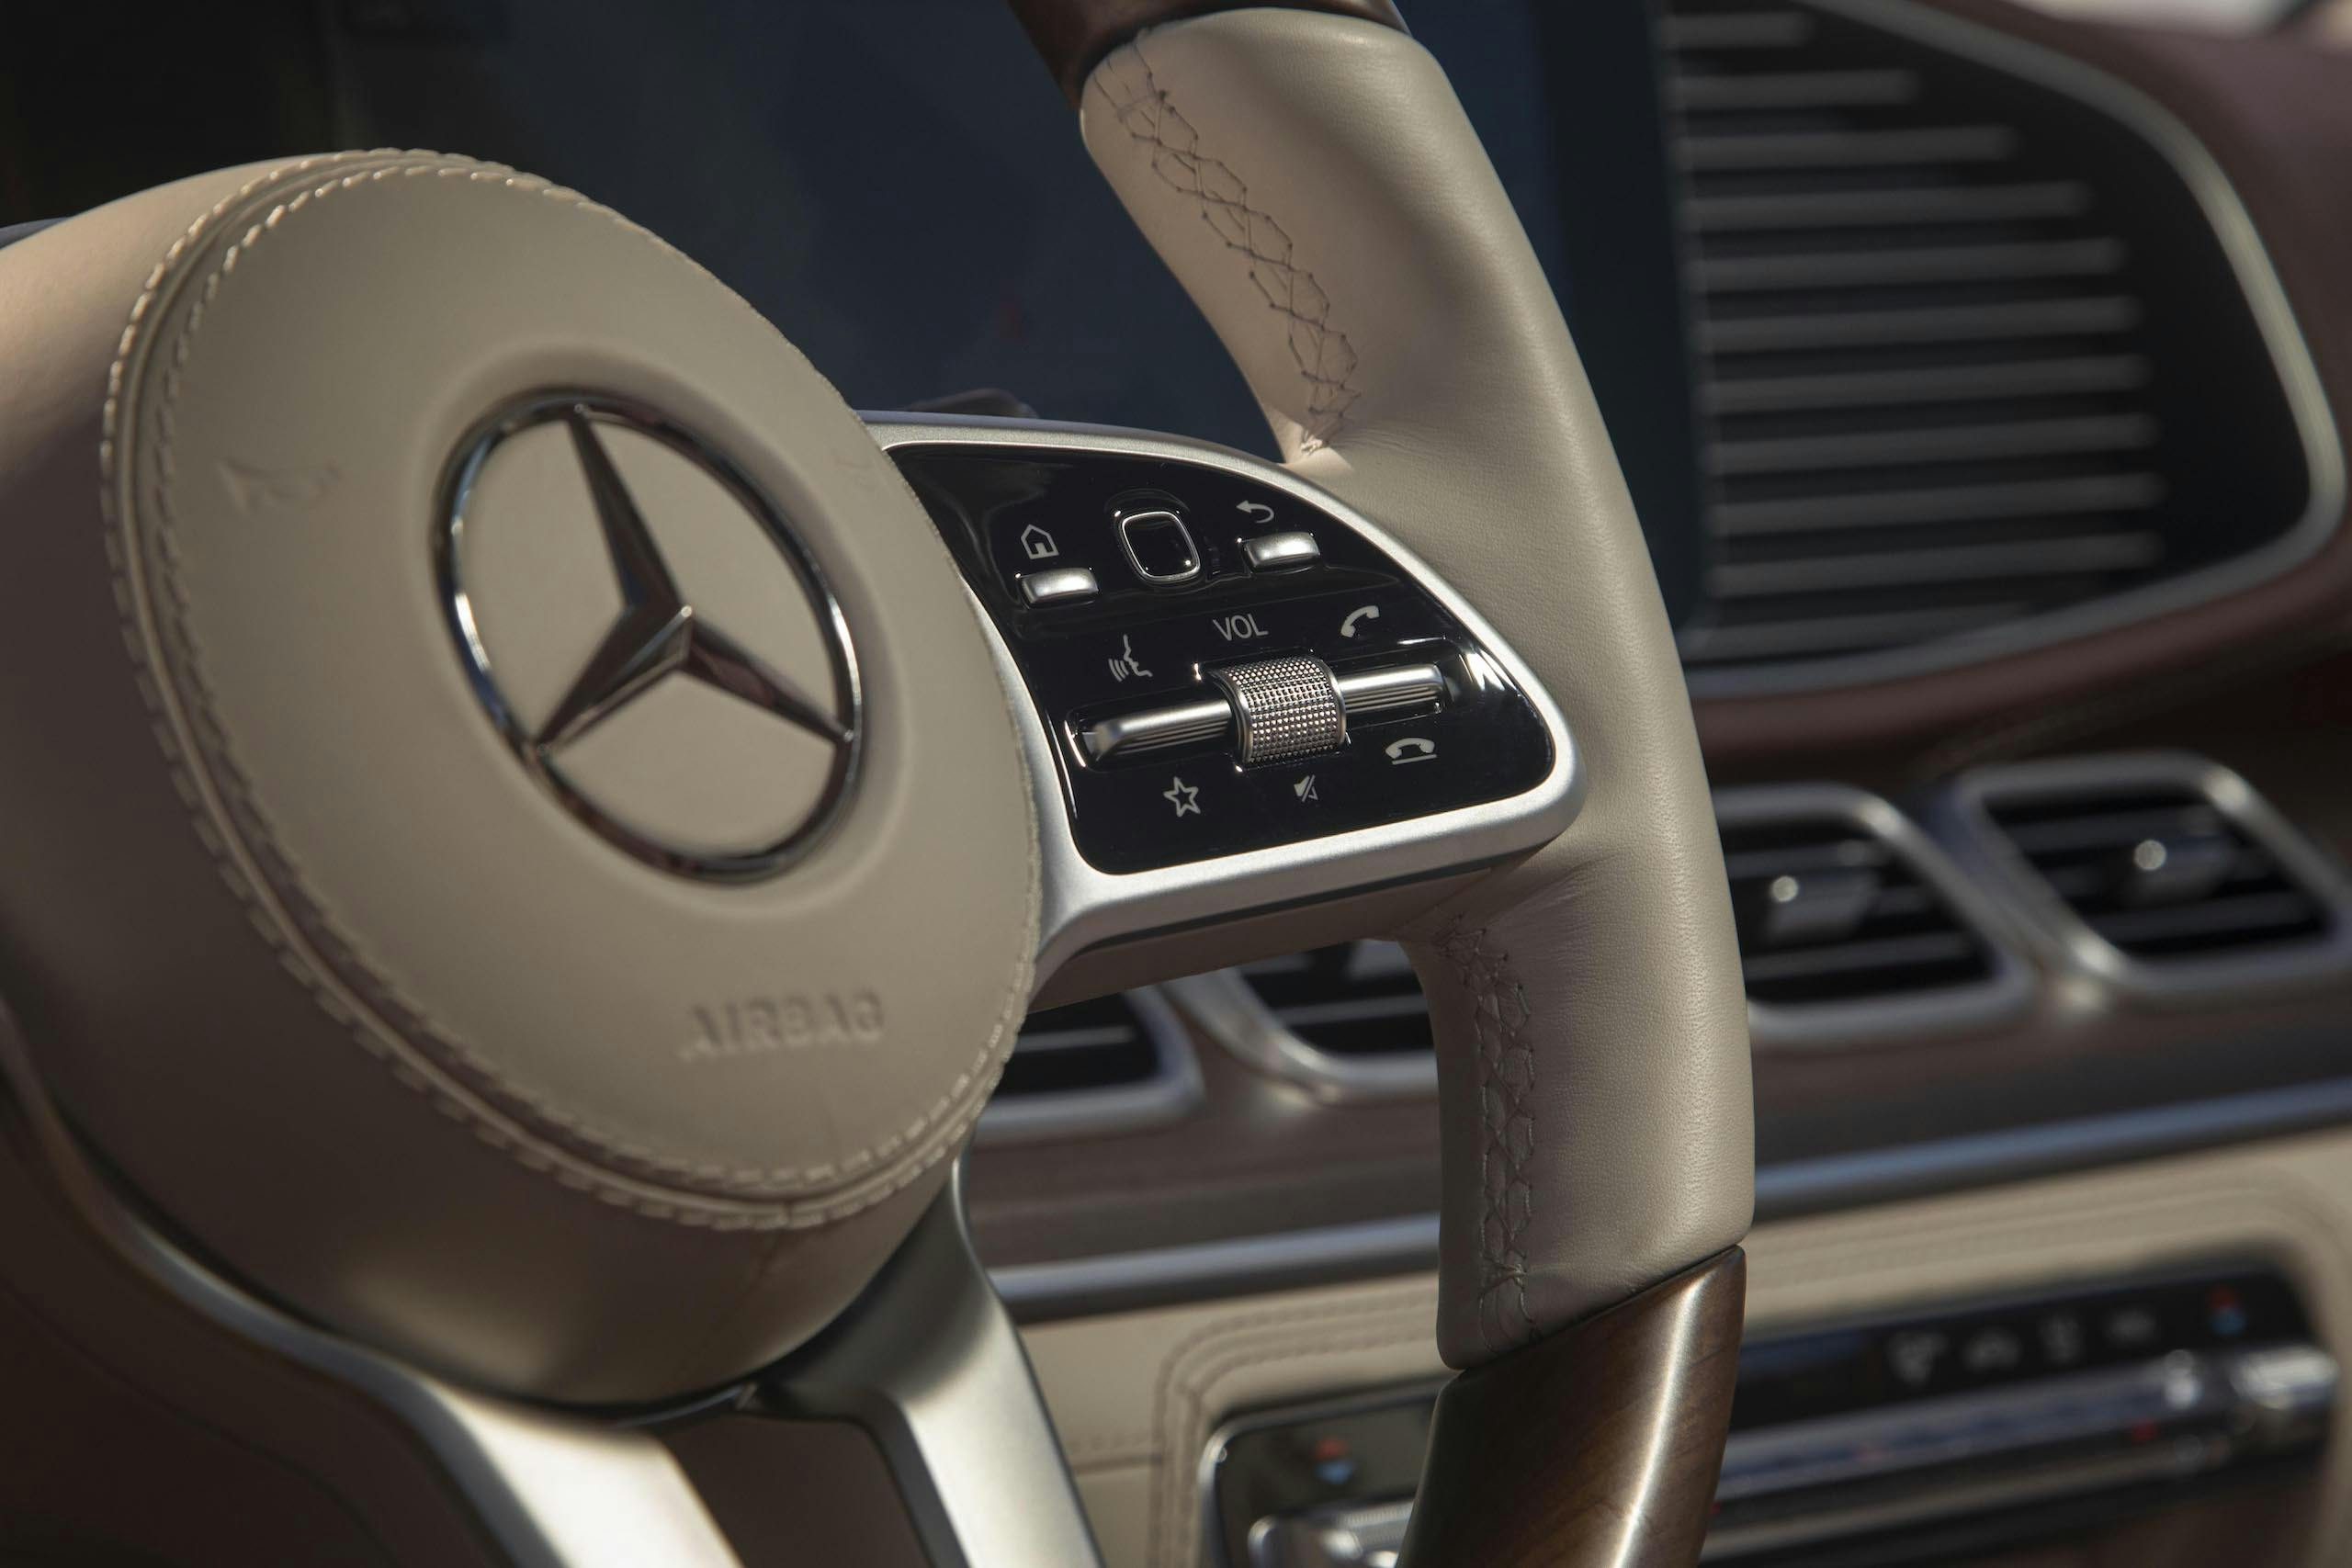 Mercedes-Maybach GLS 600 interior steering wheel detail